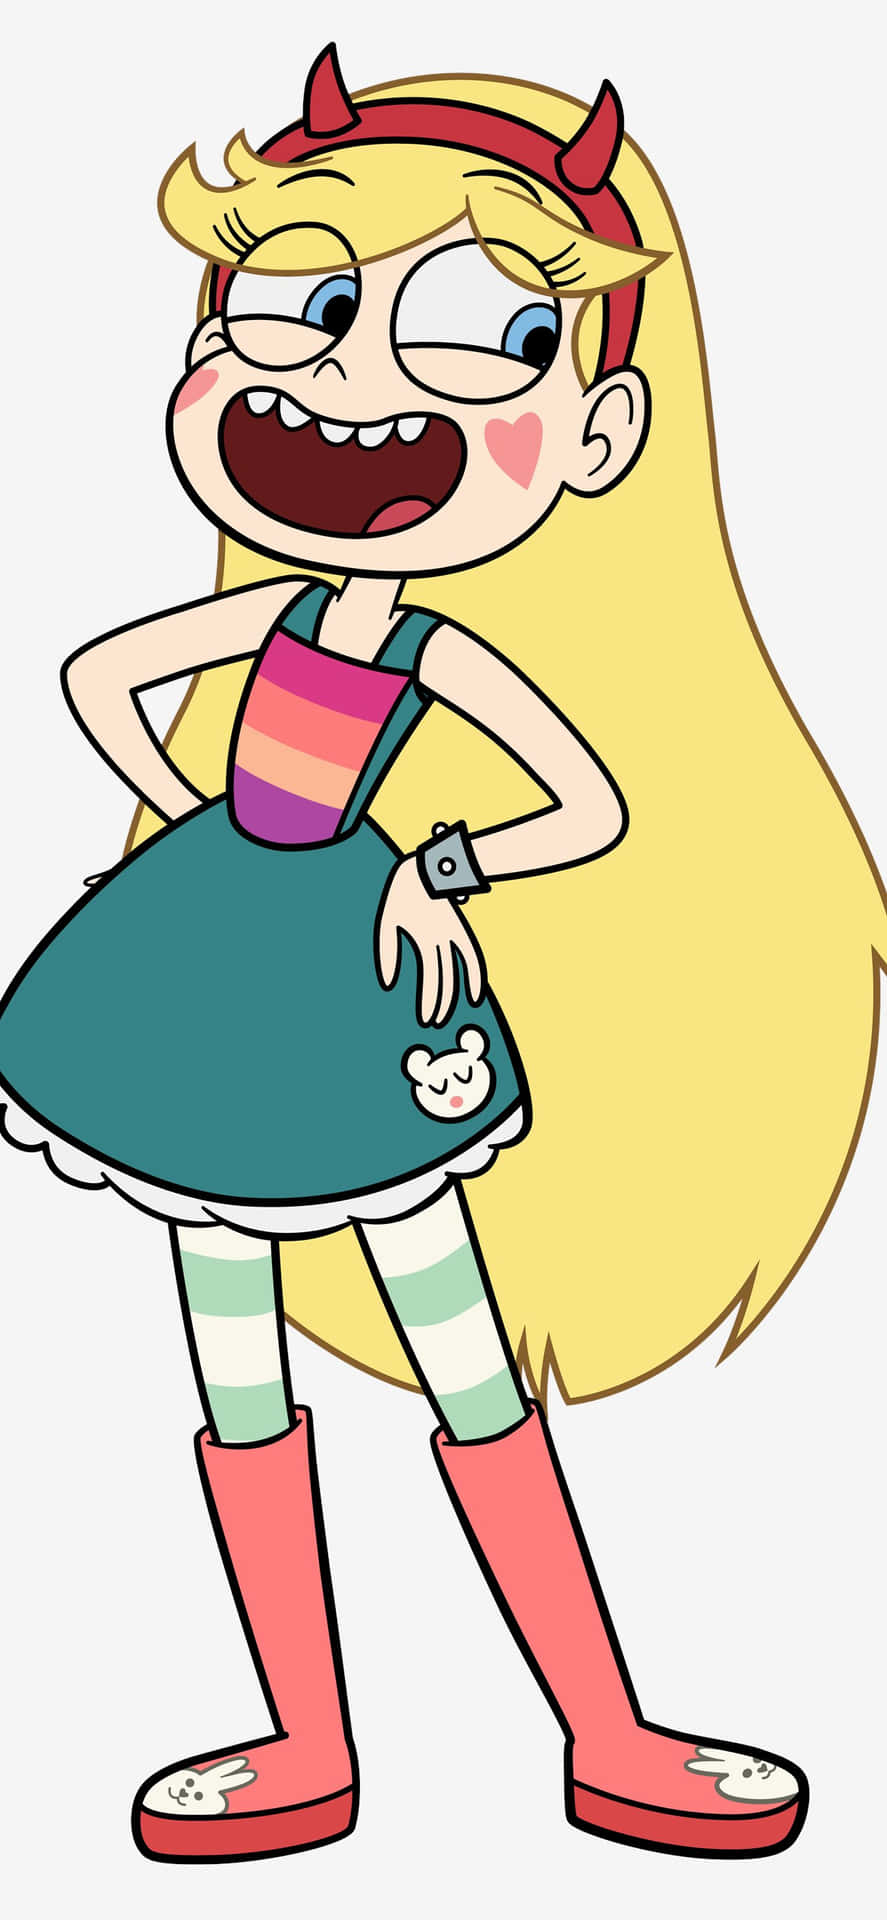 A Cartoon Girl With Long Blonde Hair And A Rainbow Dress